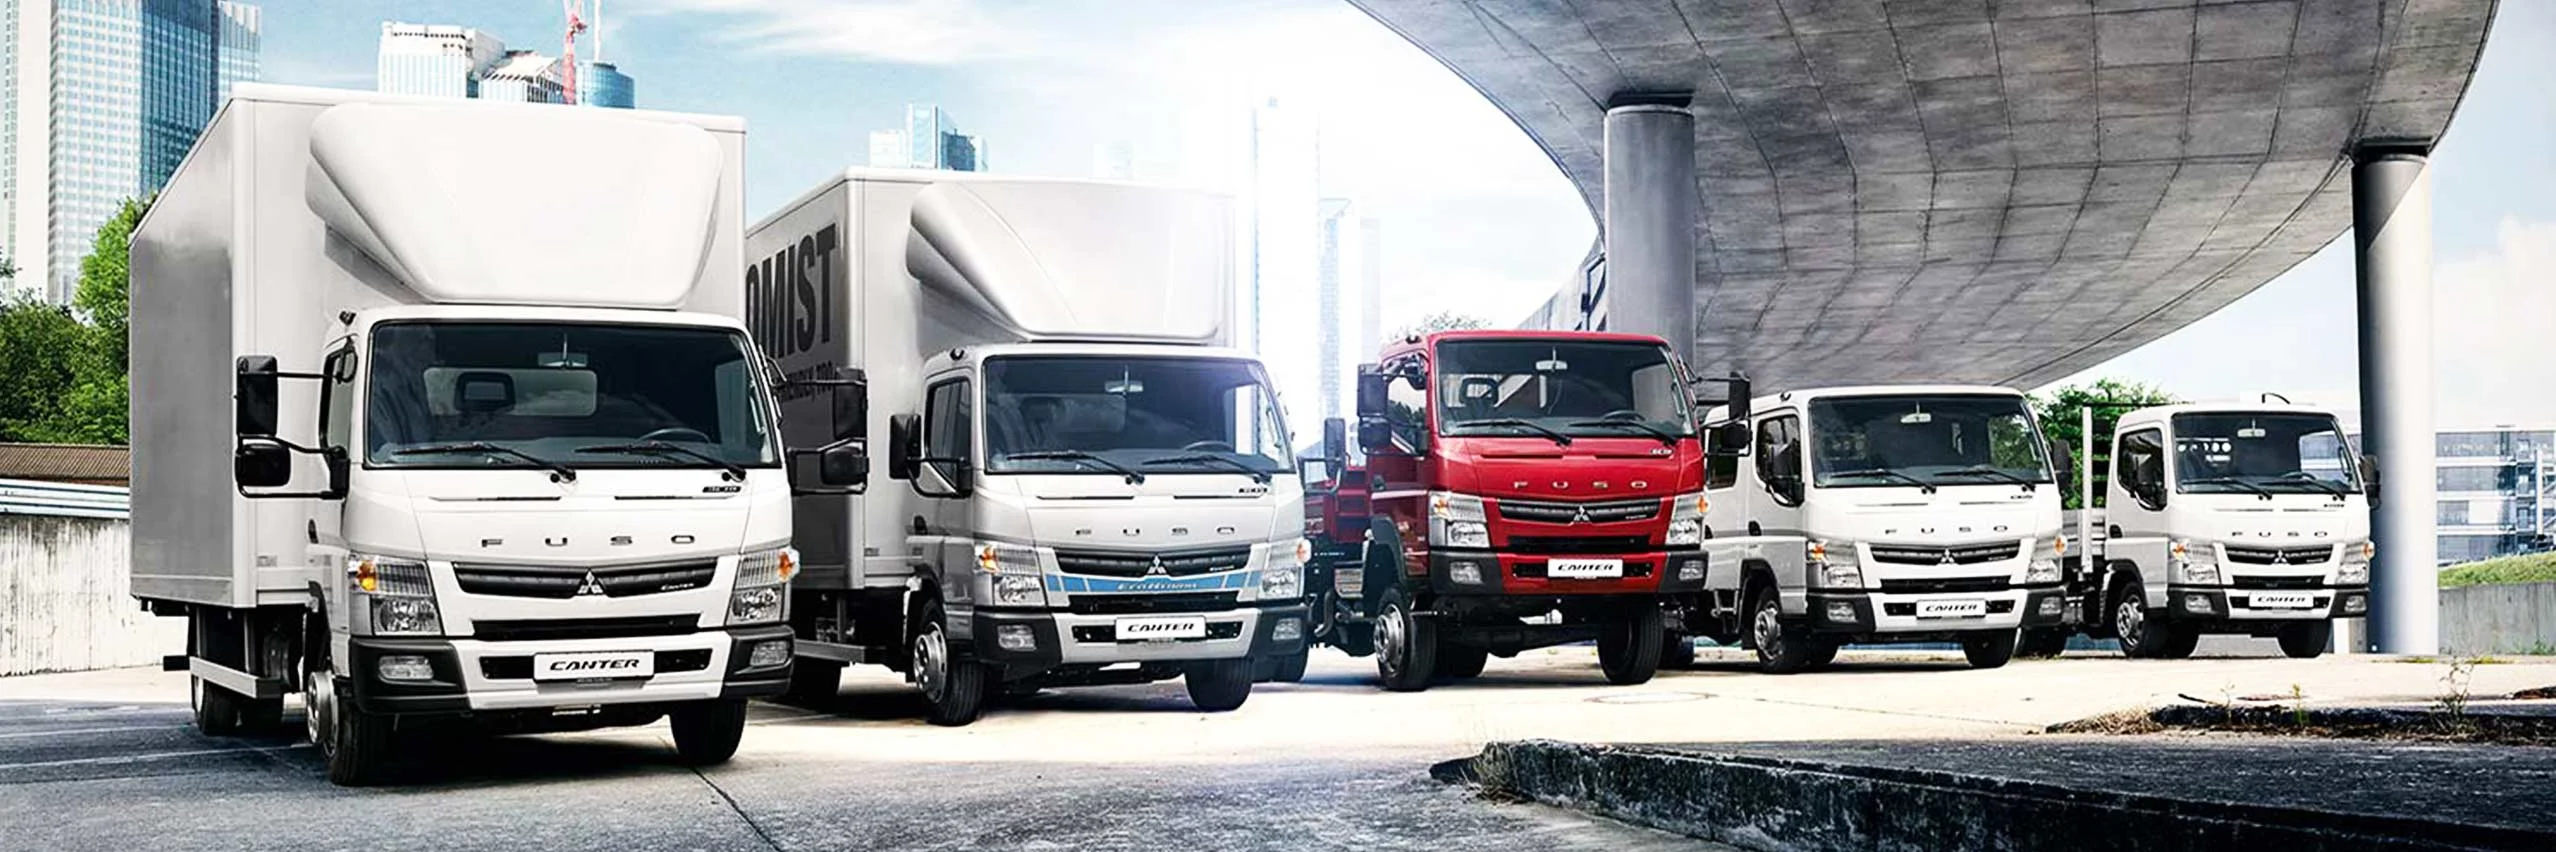 La novedosa linea de camiones de carga FUSO Canter, camiones de gran calidad